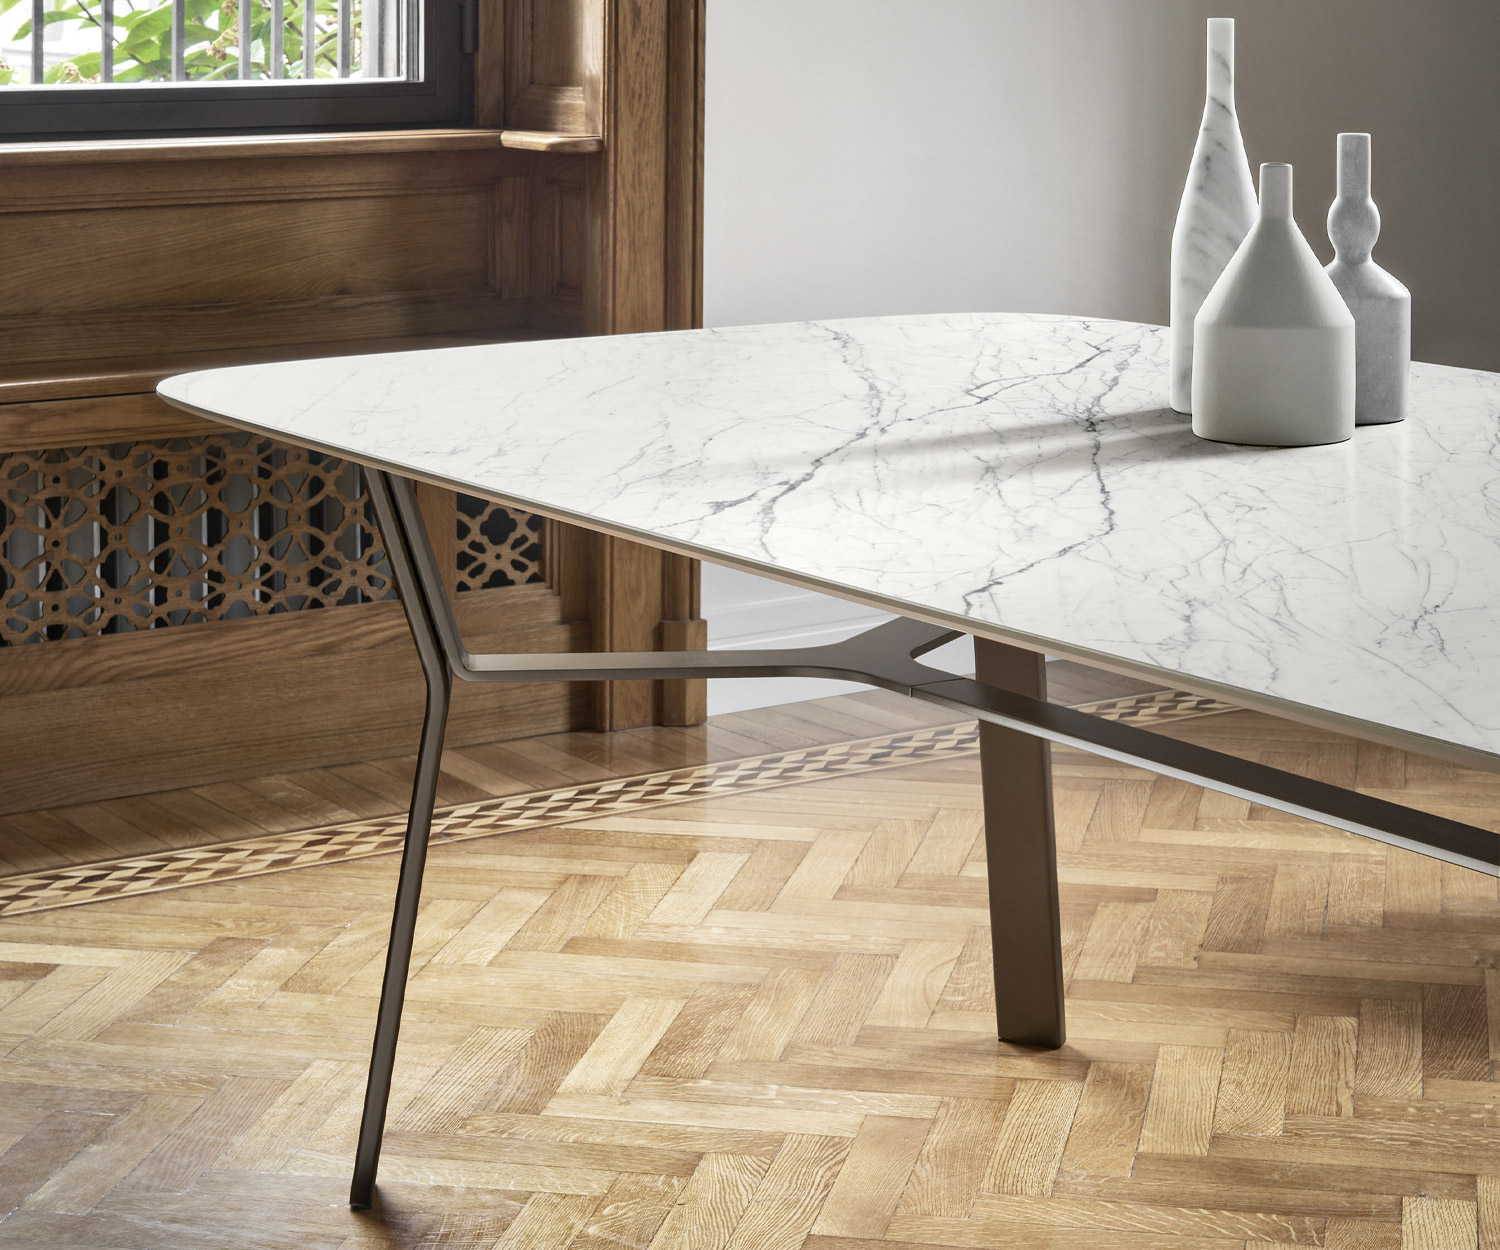 Livitalia Iron Design eettafel in detail het keramische tafelblad met wit marmeren look